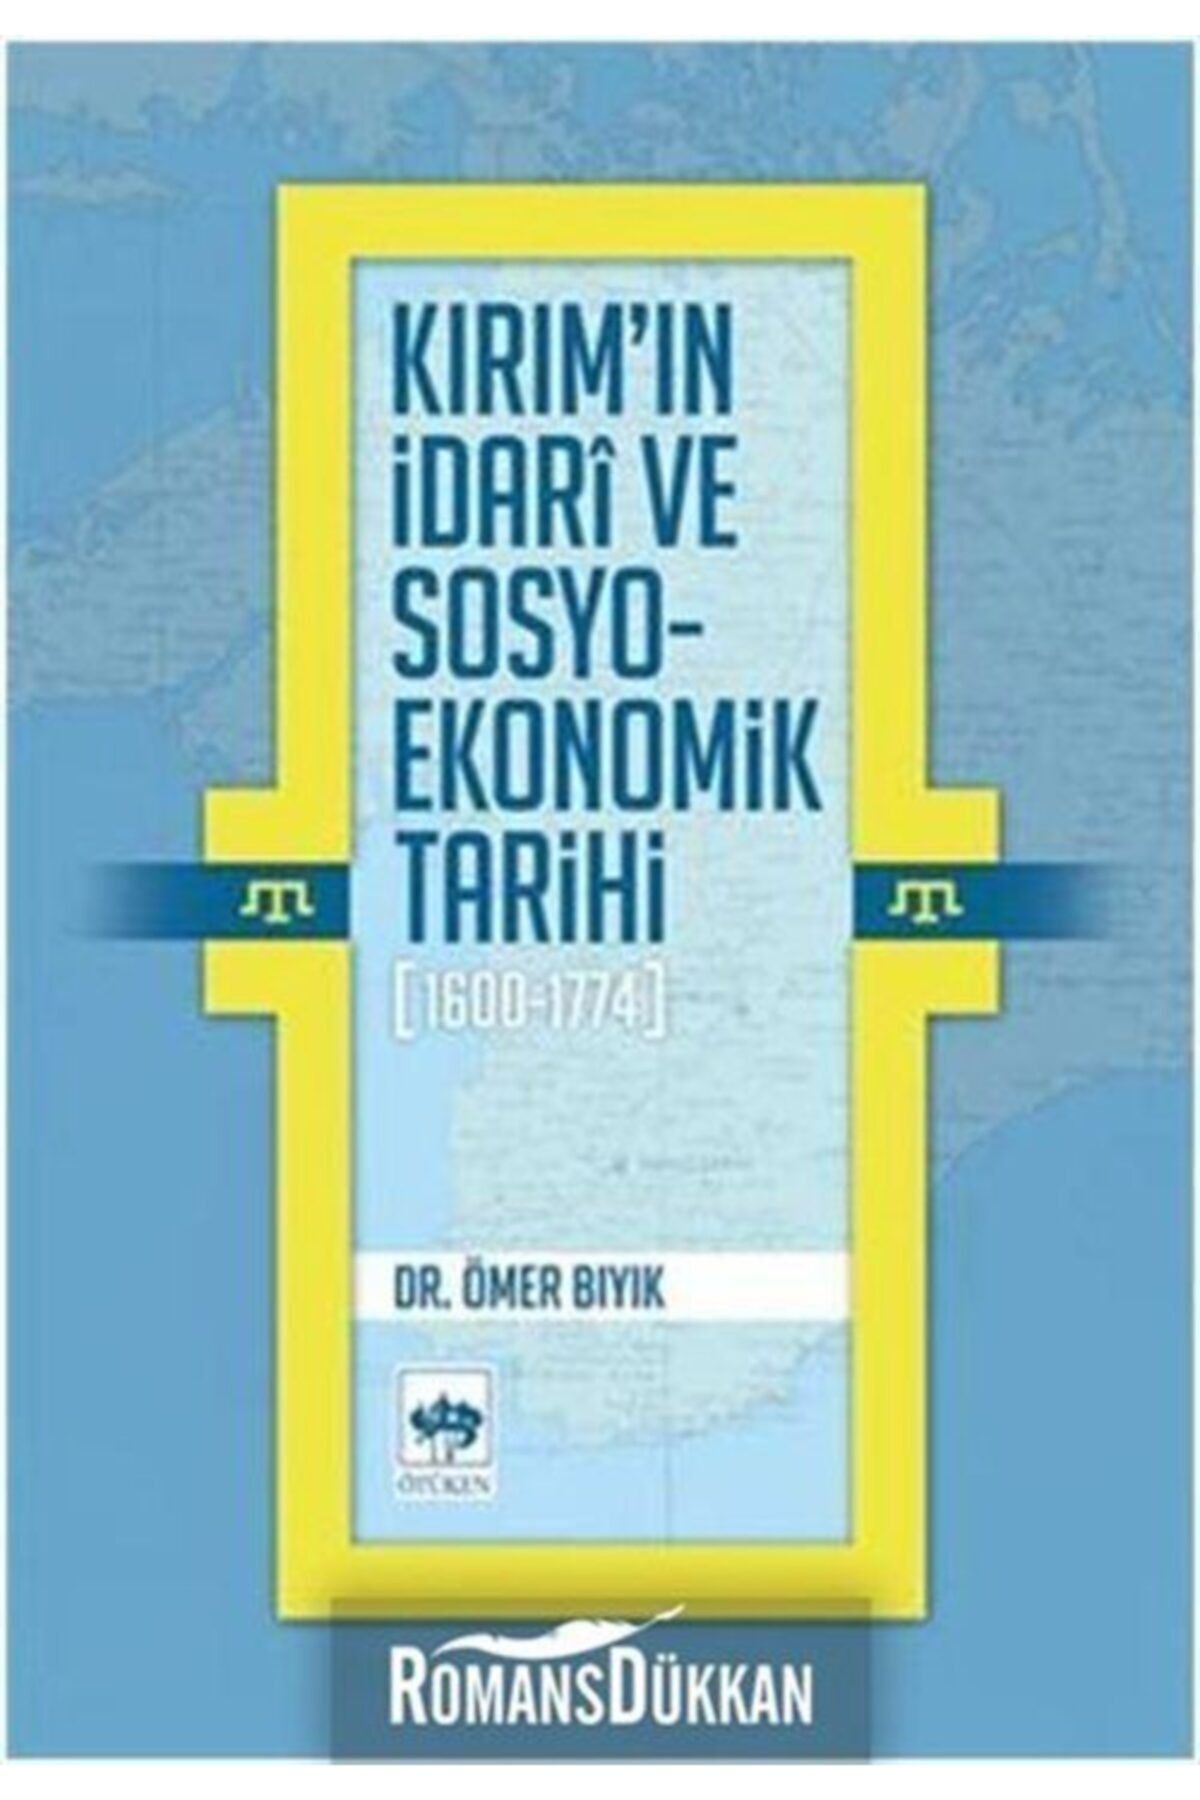 Ötüken Neşriyat Kırım'ın Idarî Ve Sosyo-ekonomik Tarihi 1600 1774 / Ömer Bıyık